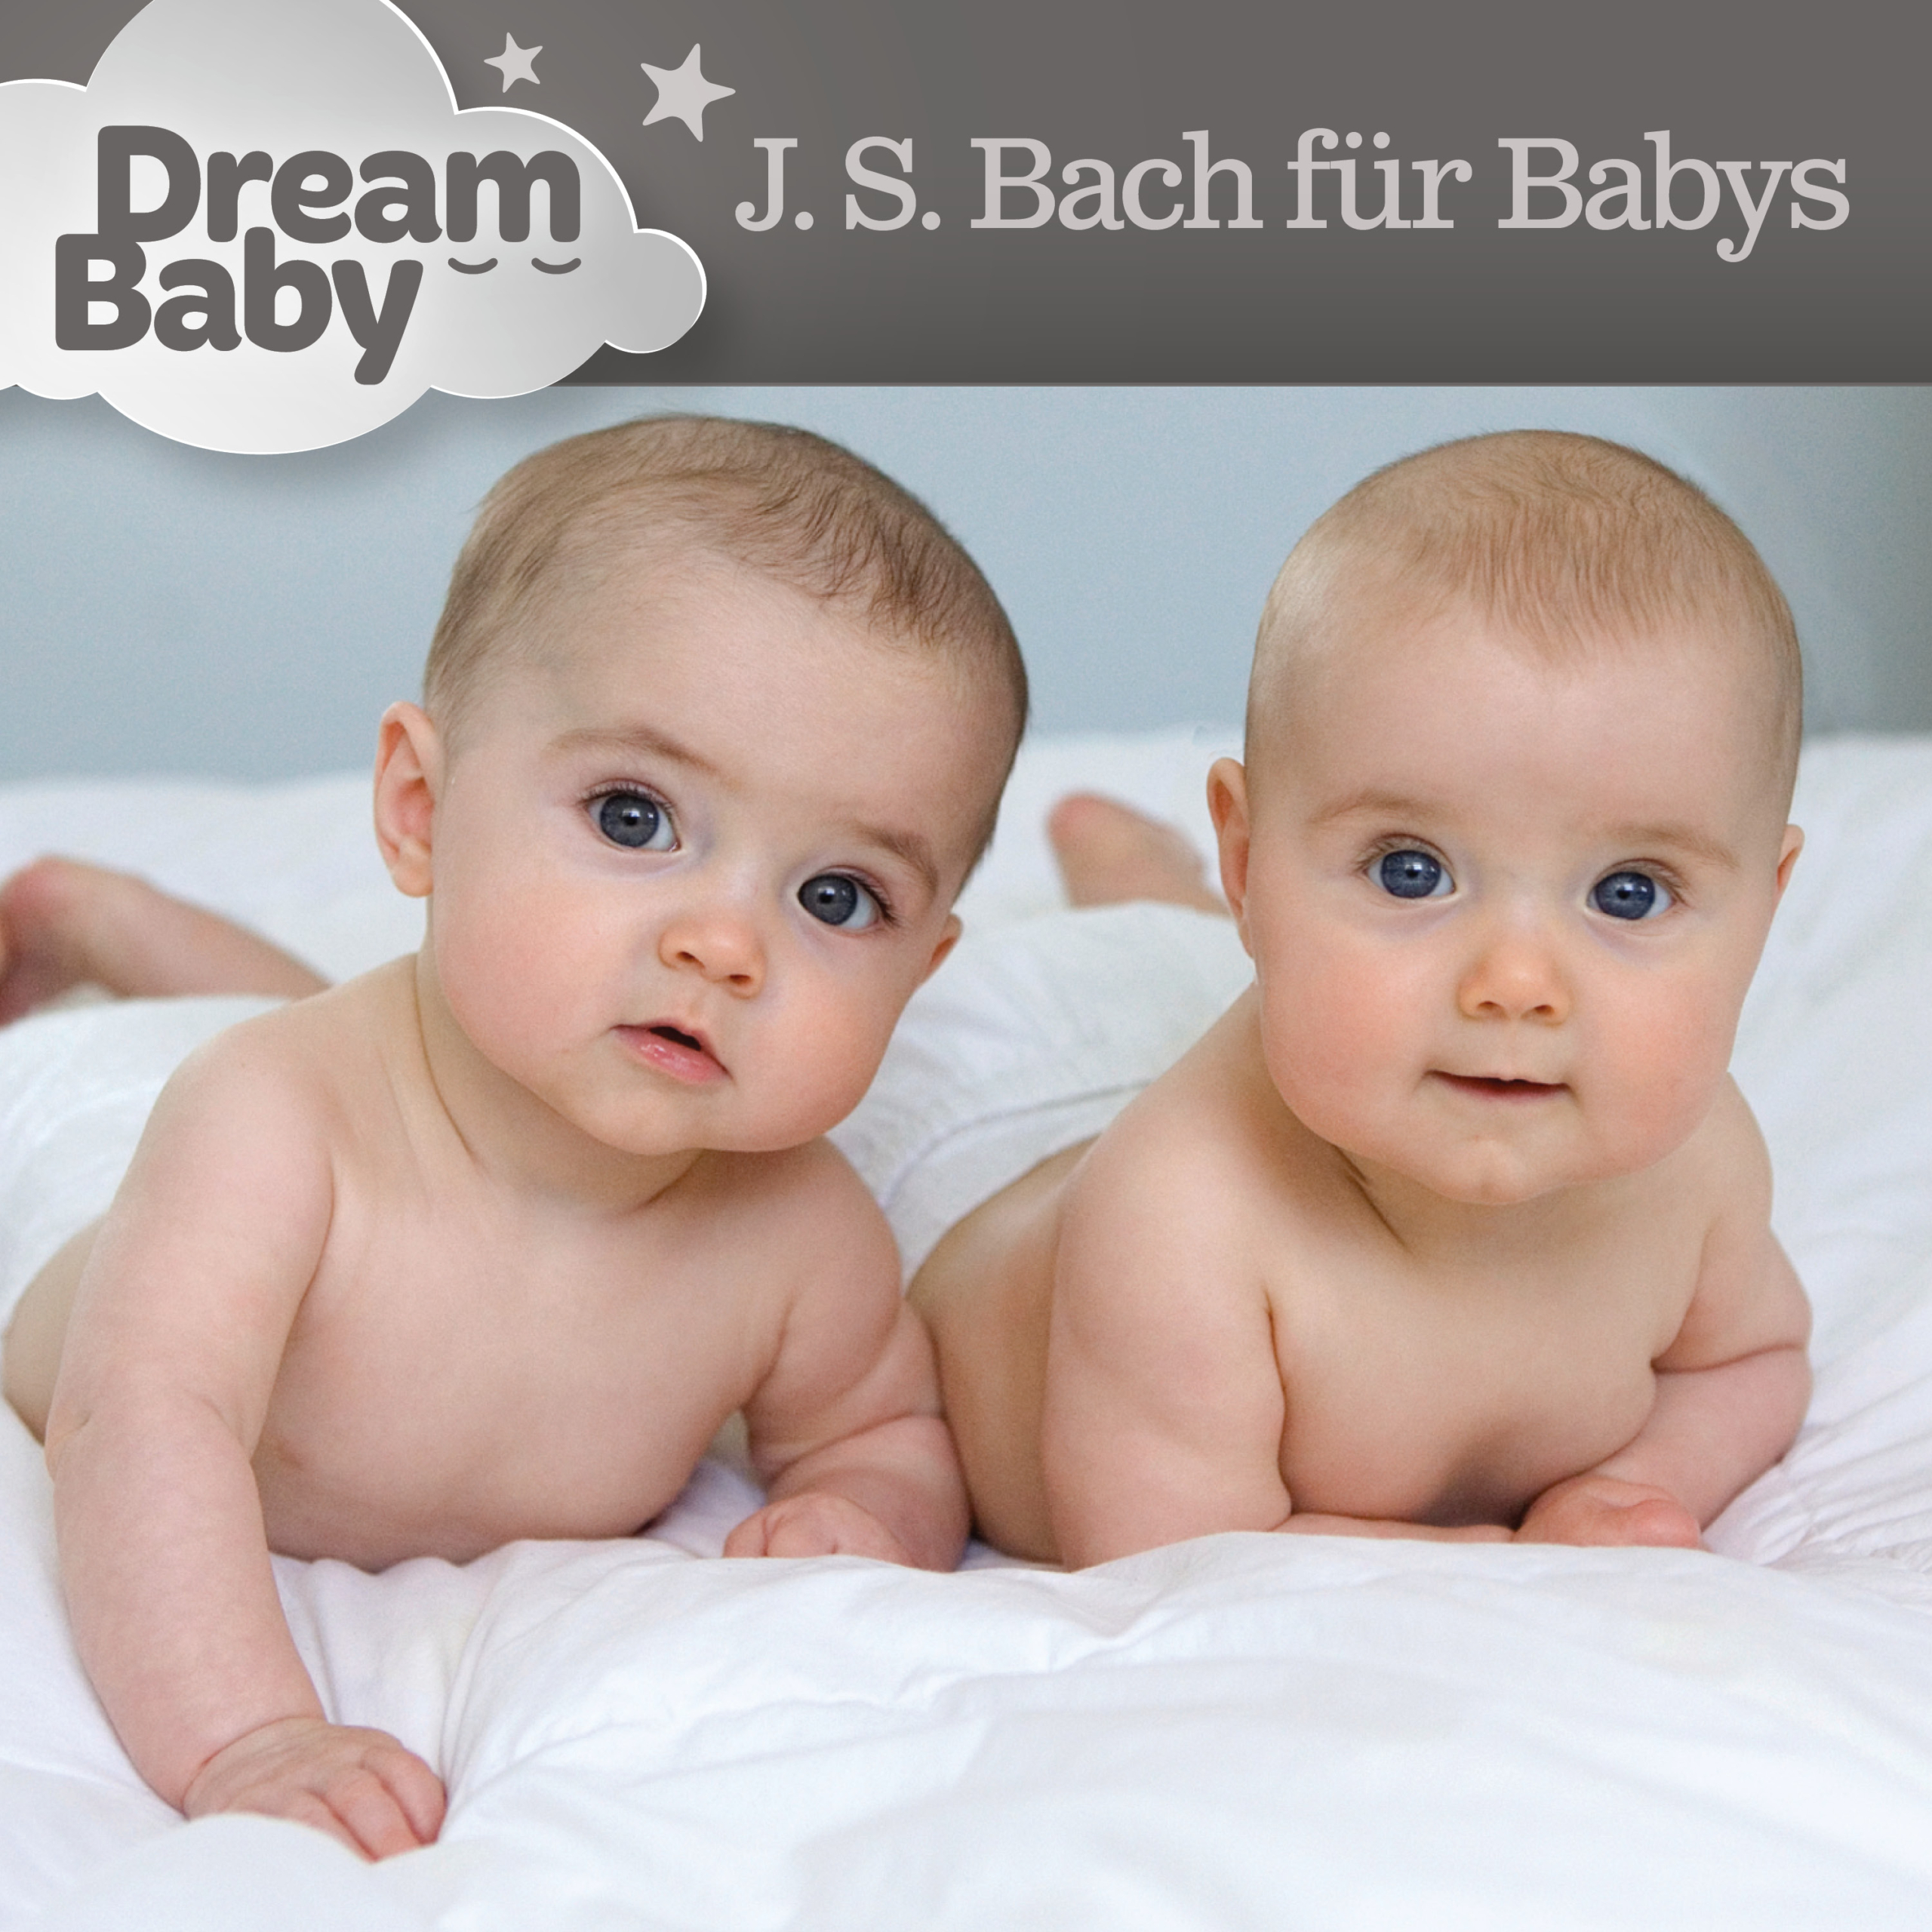 J.S. Bach für Babys